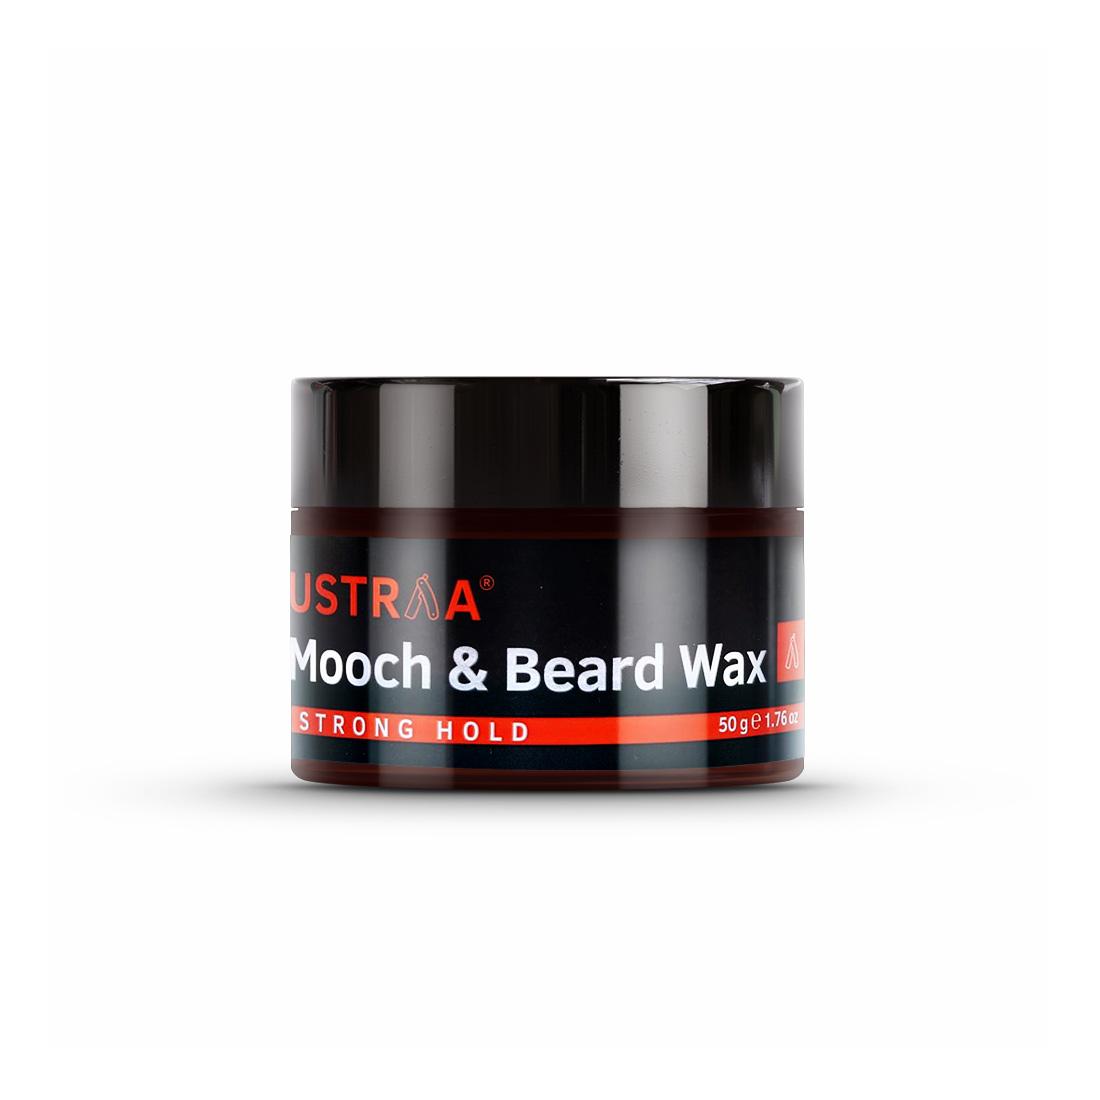 Review | Beard & Mooch Wax - Strong Hold - 50g